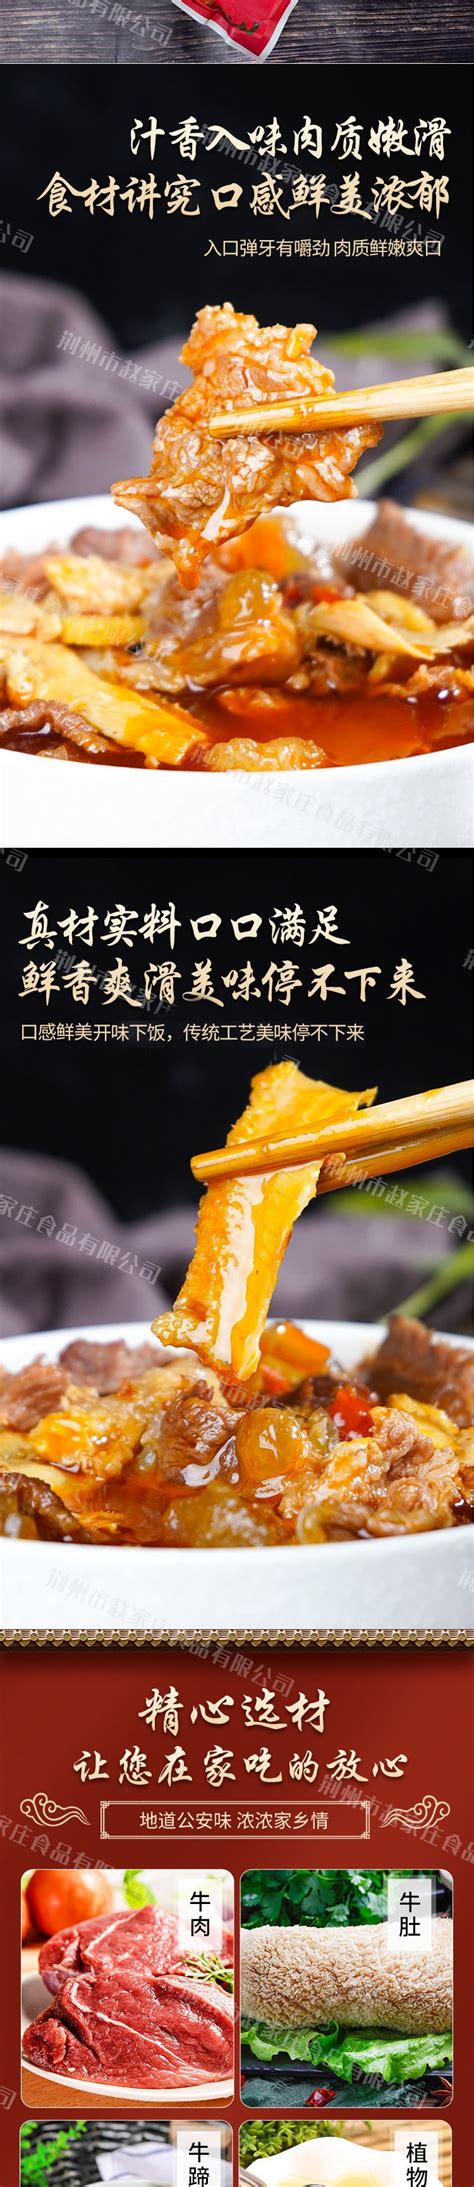 荆州特产公安牛三鲜速食火锅牛肉罐头牛杂筋头巴脑厂家直销-阿里巴巴